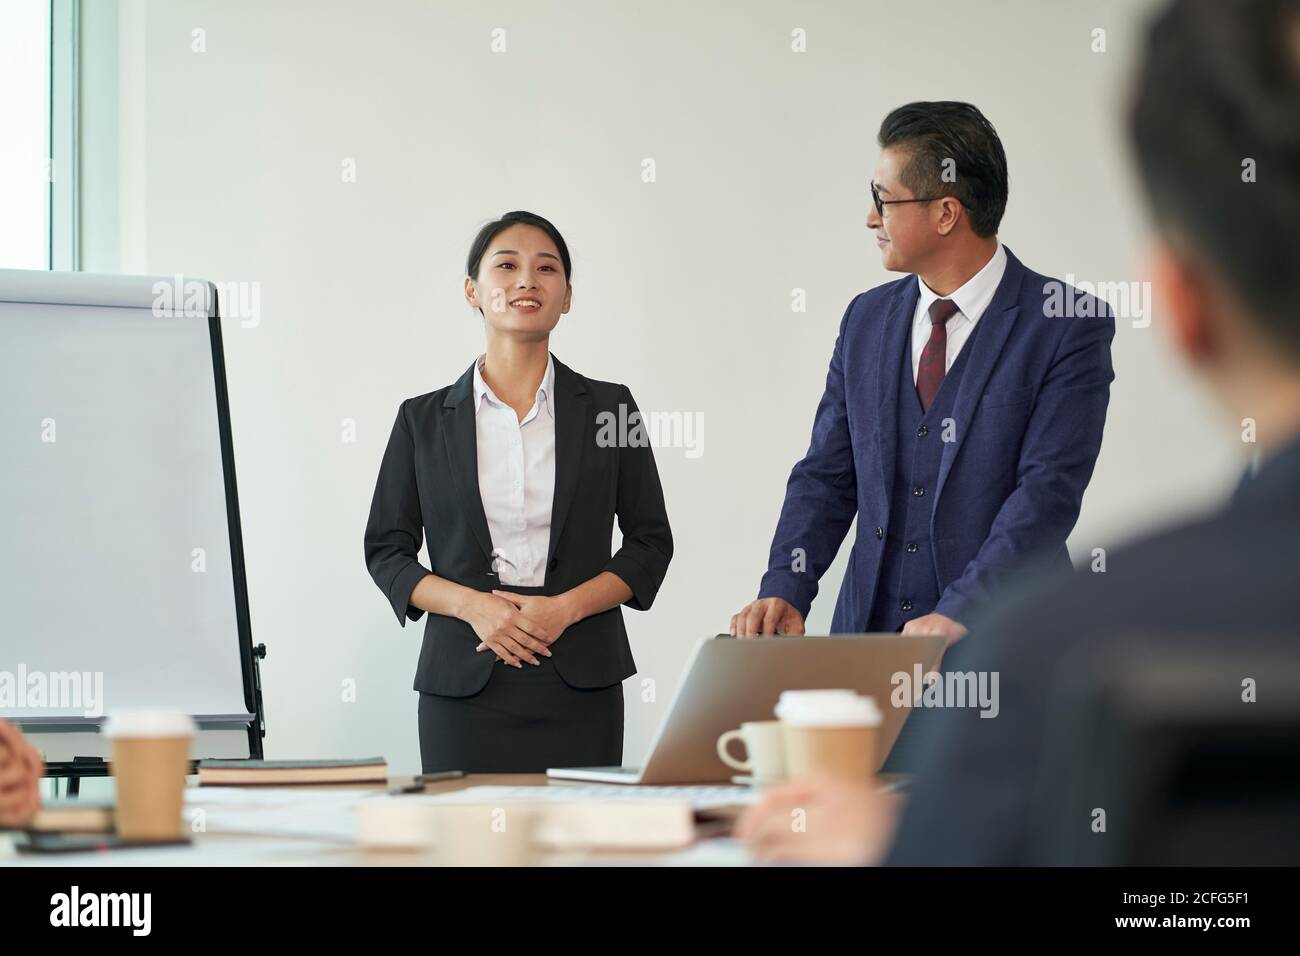 un responsable asiatique présente un nouvel employé lors d'une réunion du personnel lors d'une conférence chambre Banque D'Images